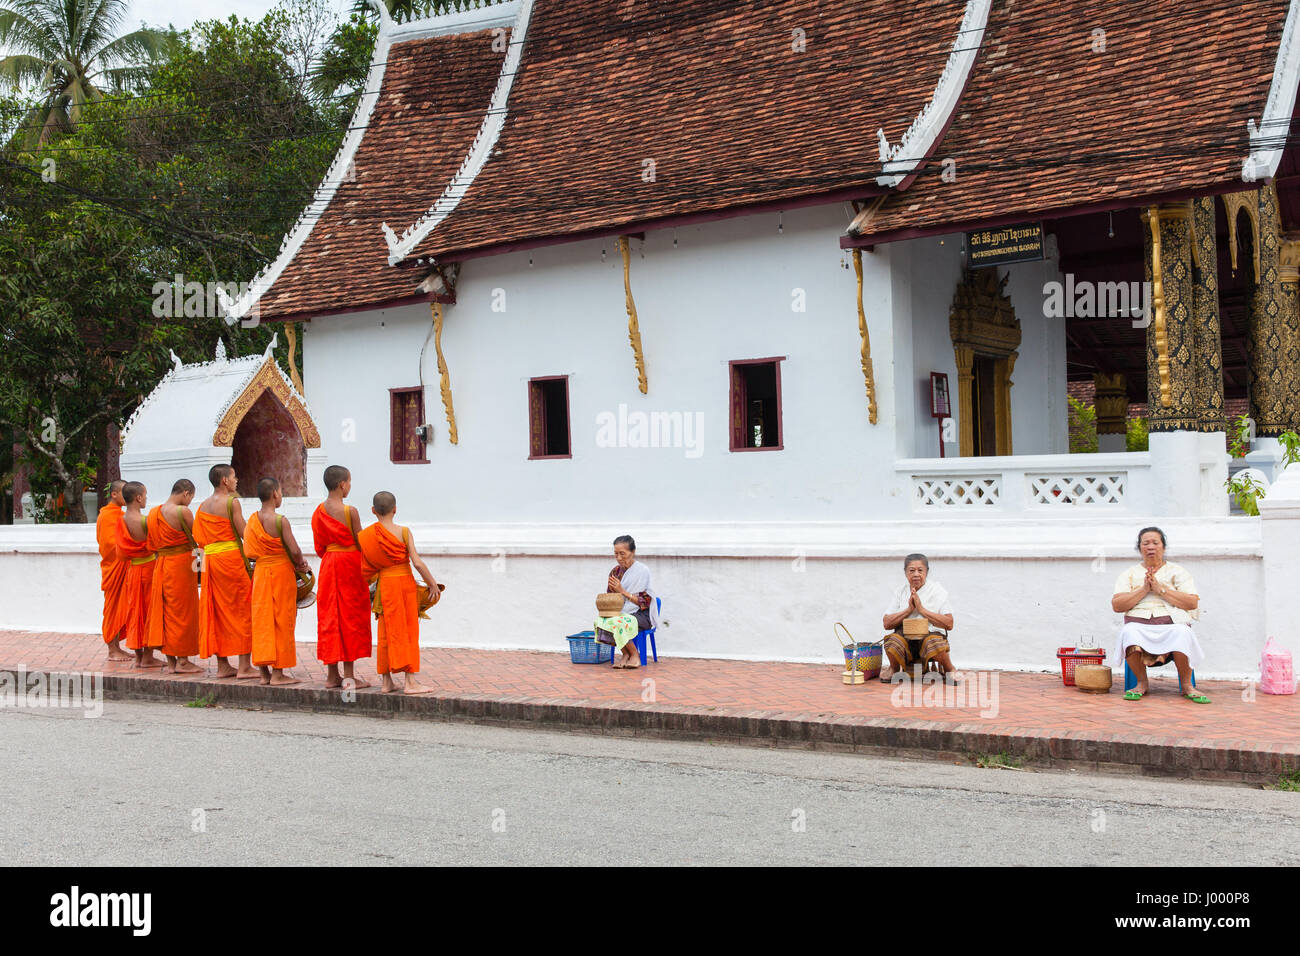 La República Democrática Popular Lao, Laos, Luang Prabang - 22 Junio 2014: Mujer ora después de dar limosna a los monjes budistas en la calle. Foto de stock